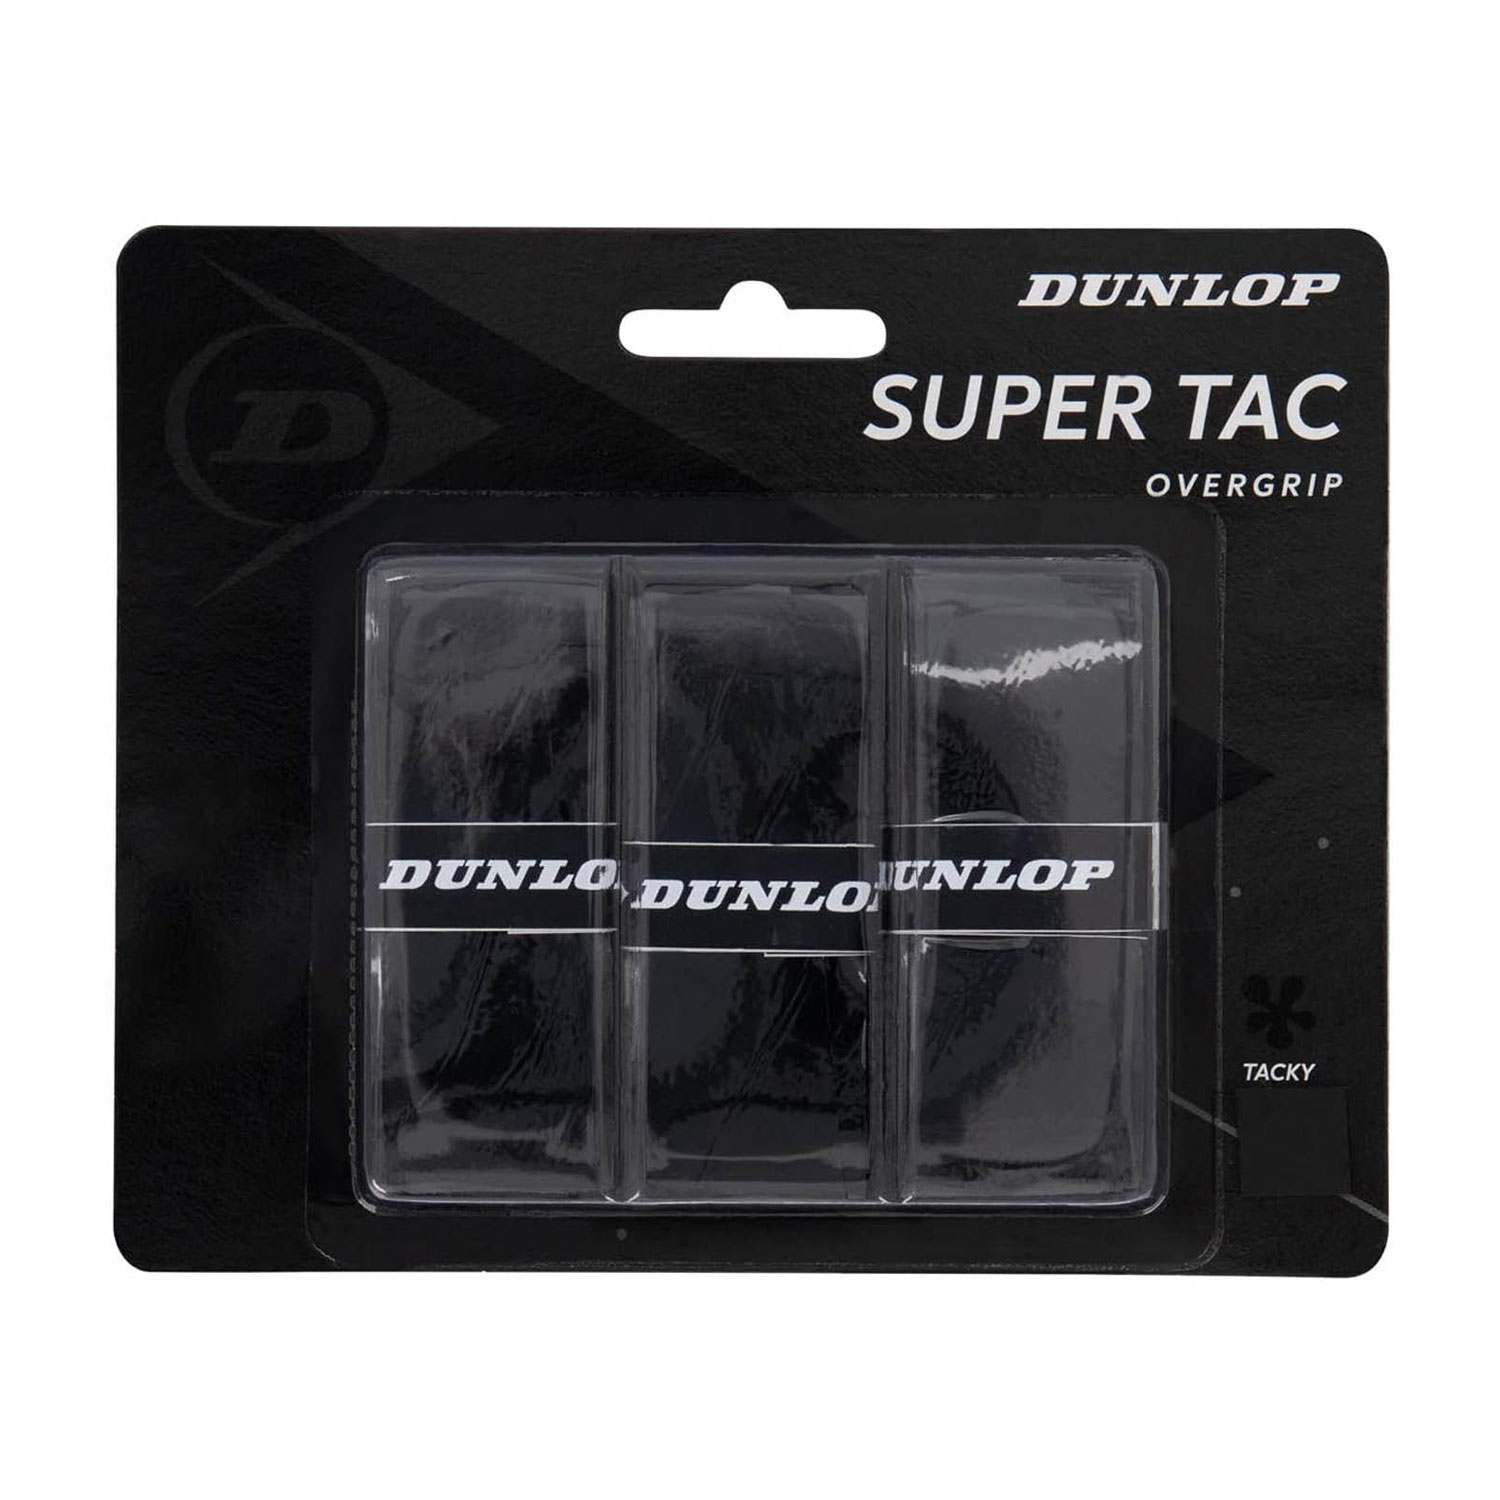 Dunlop Super Tac Overgrip x 3 - Black